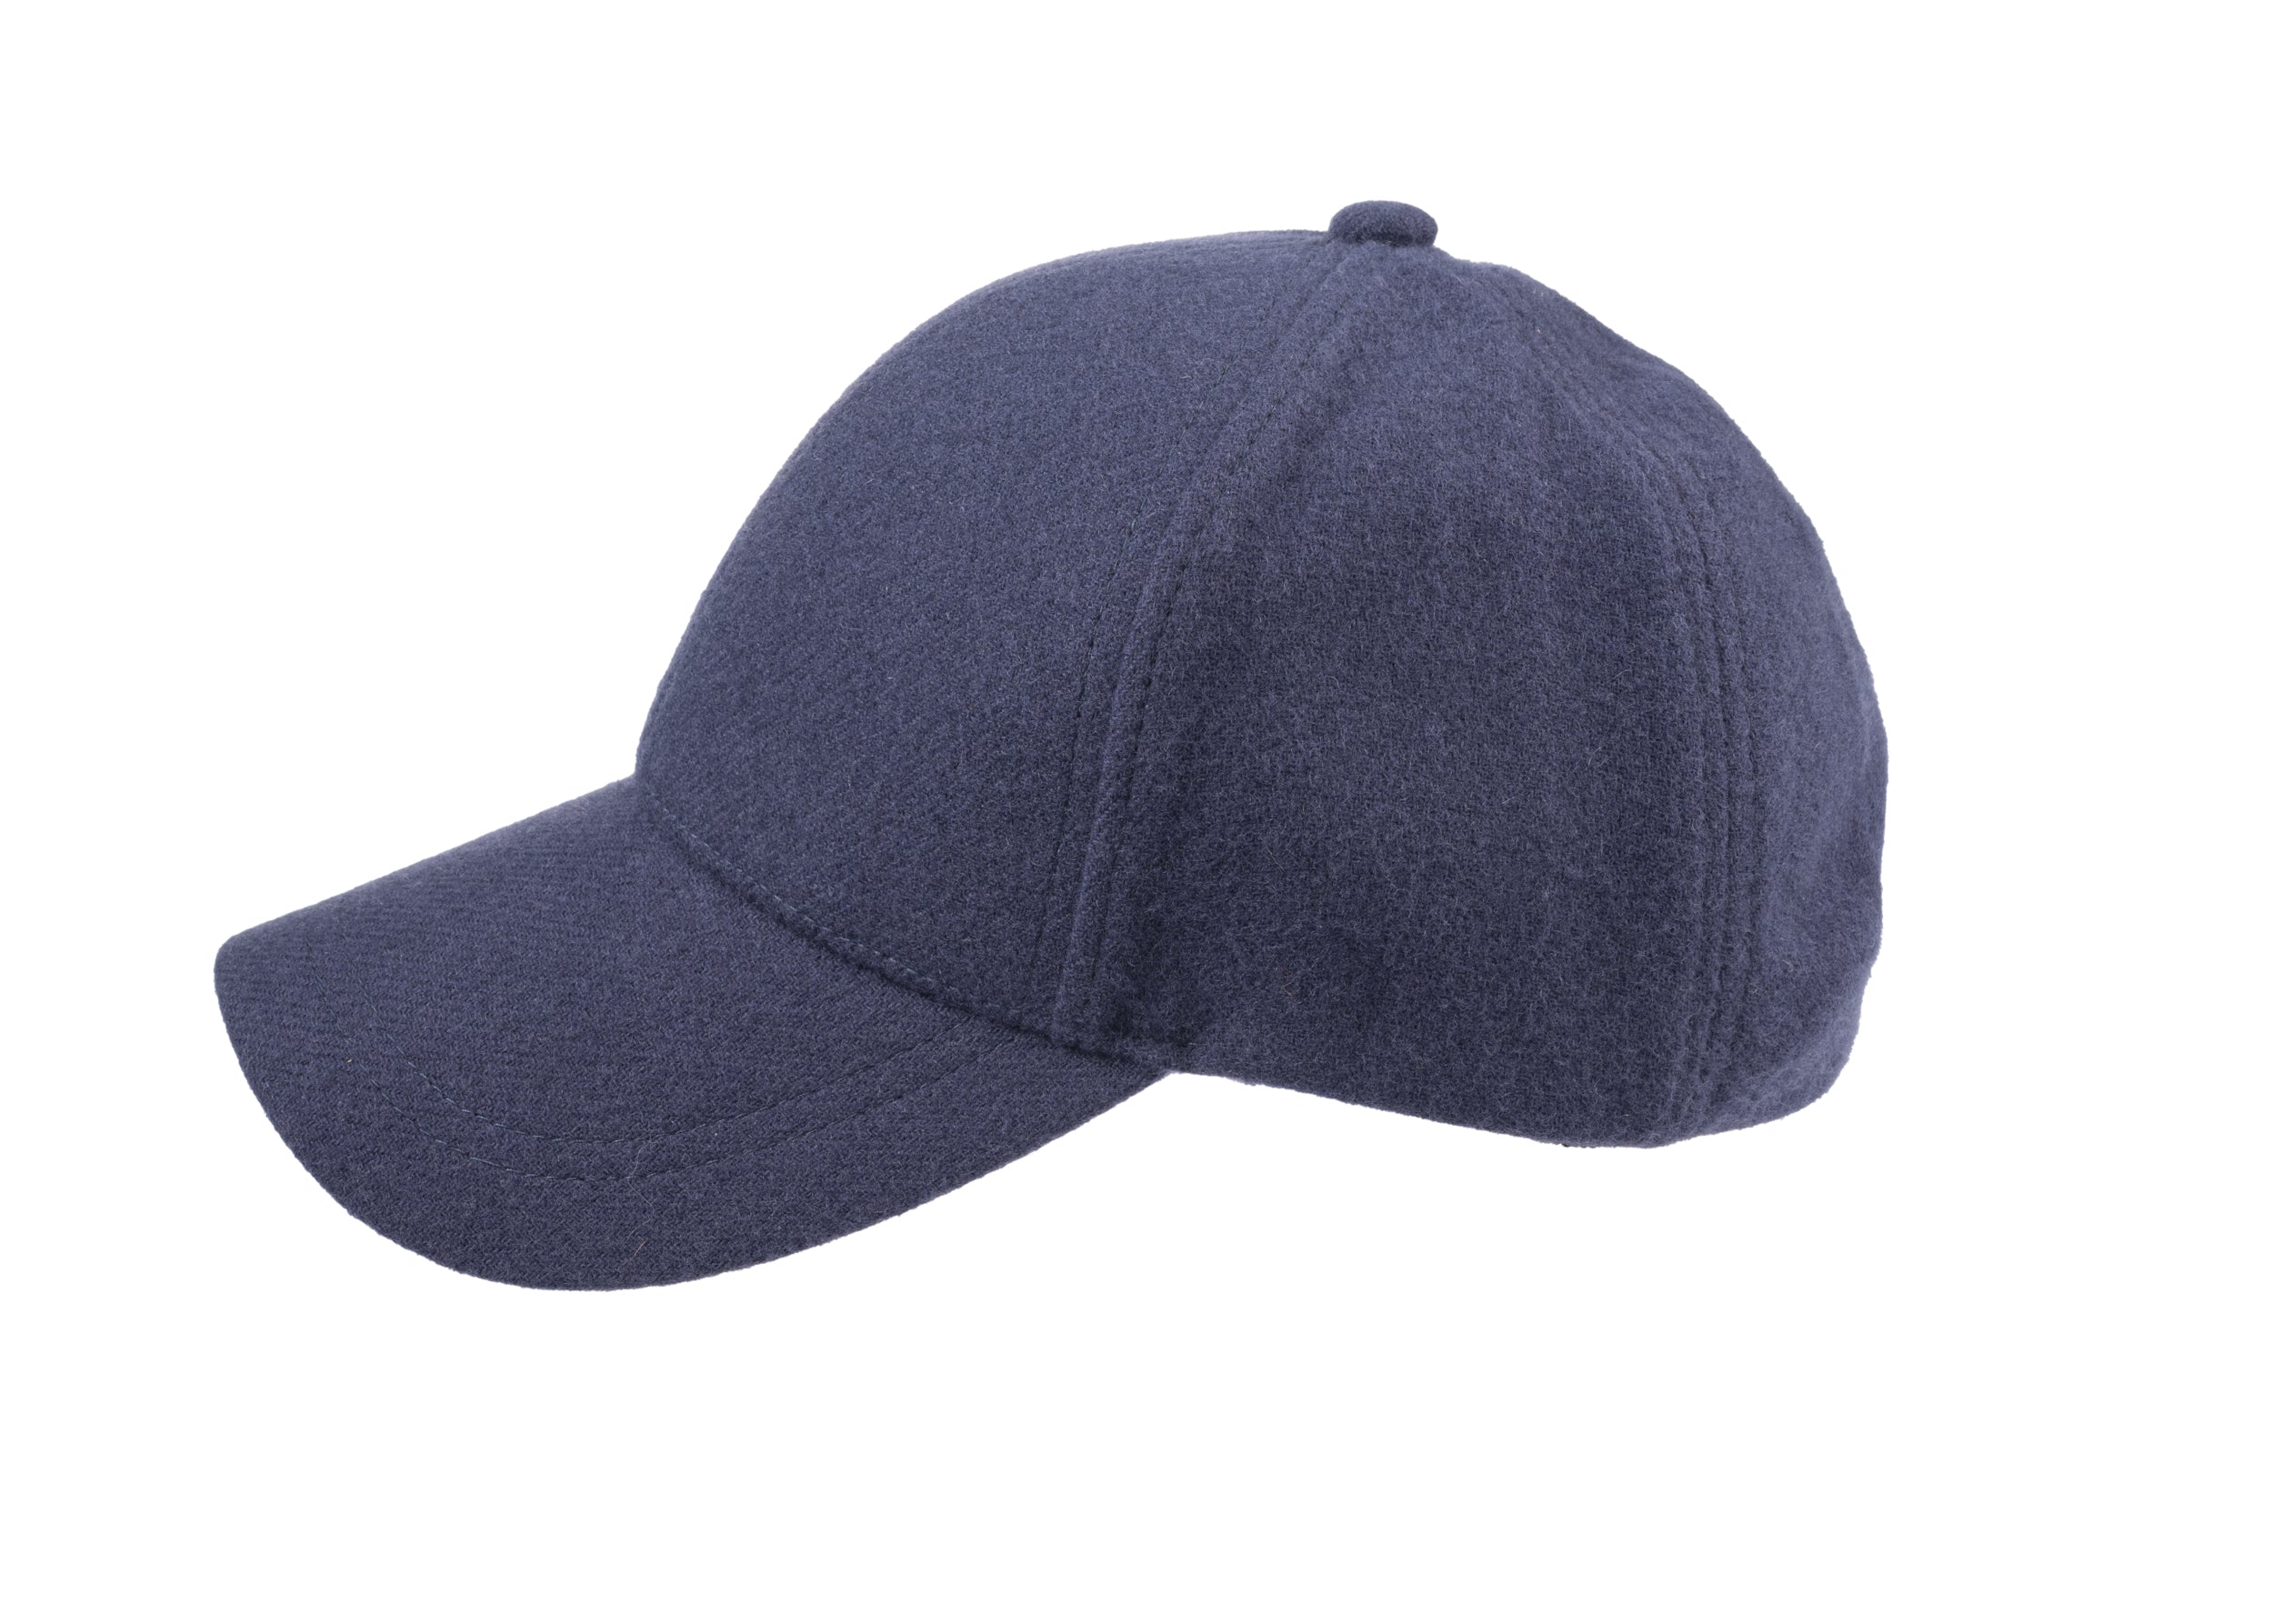 Josh baseball cap in cashmere/wool blend fabric in Blue